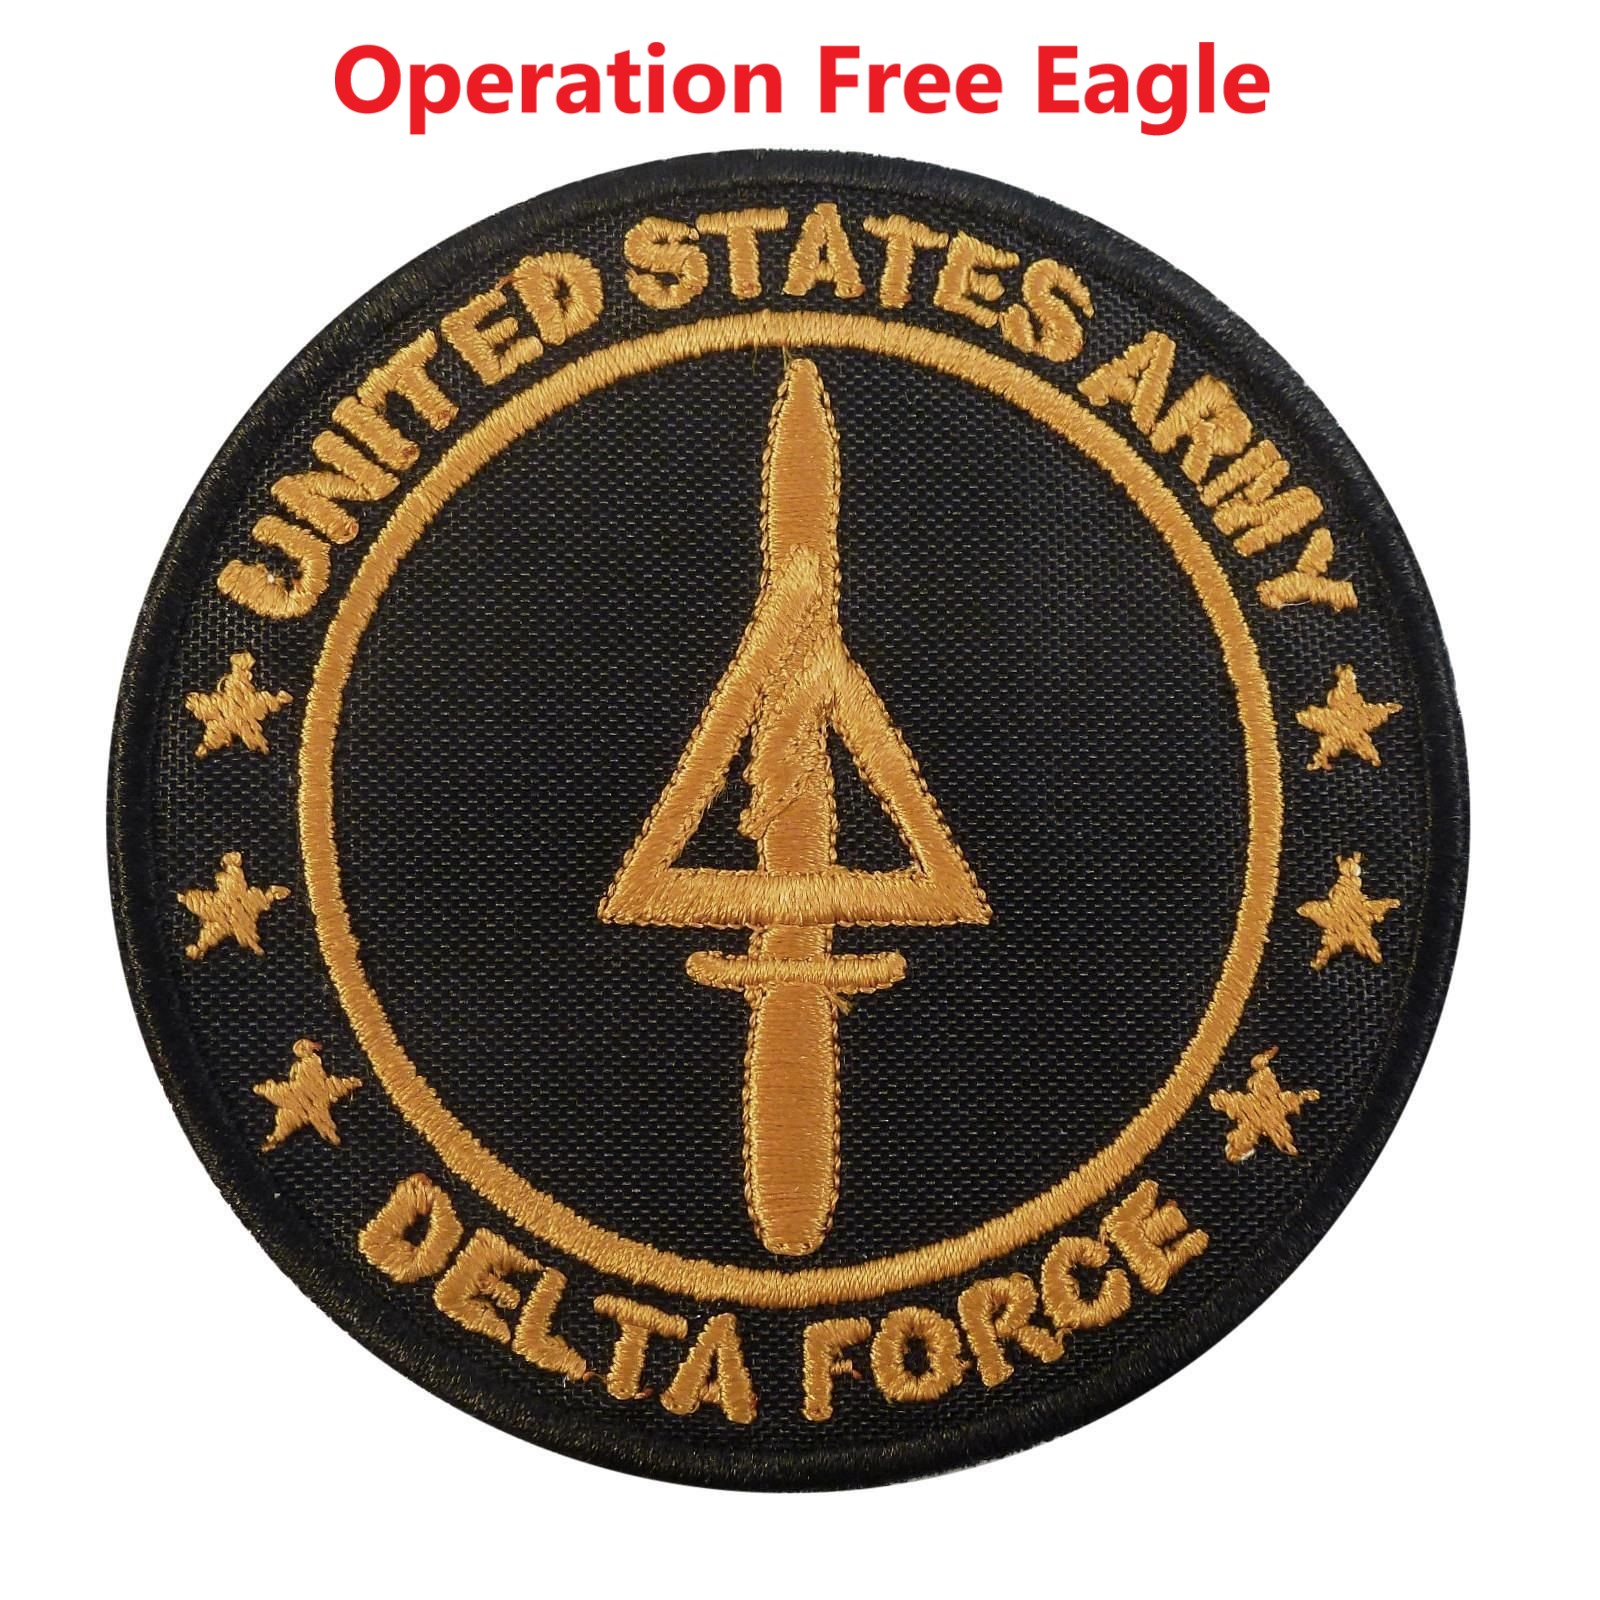 Operation Free Eagle